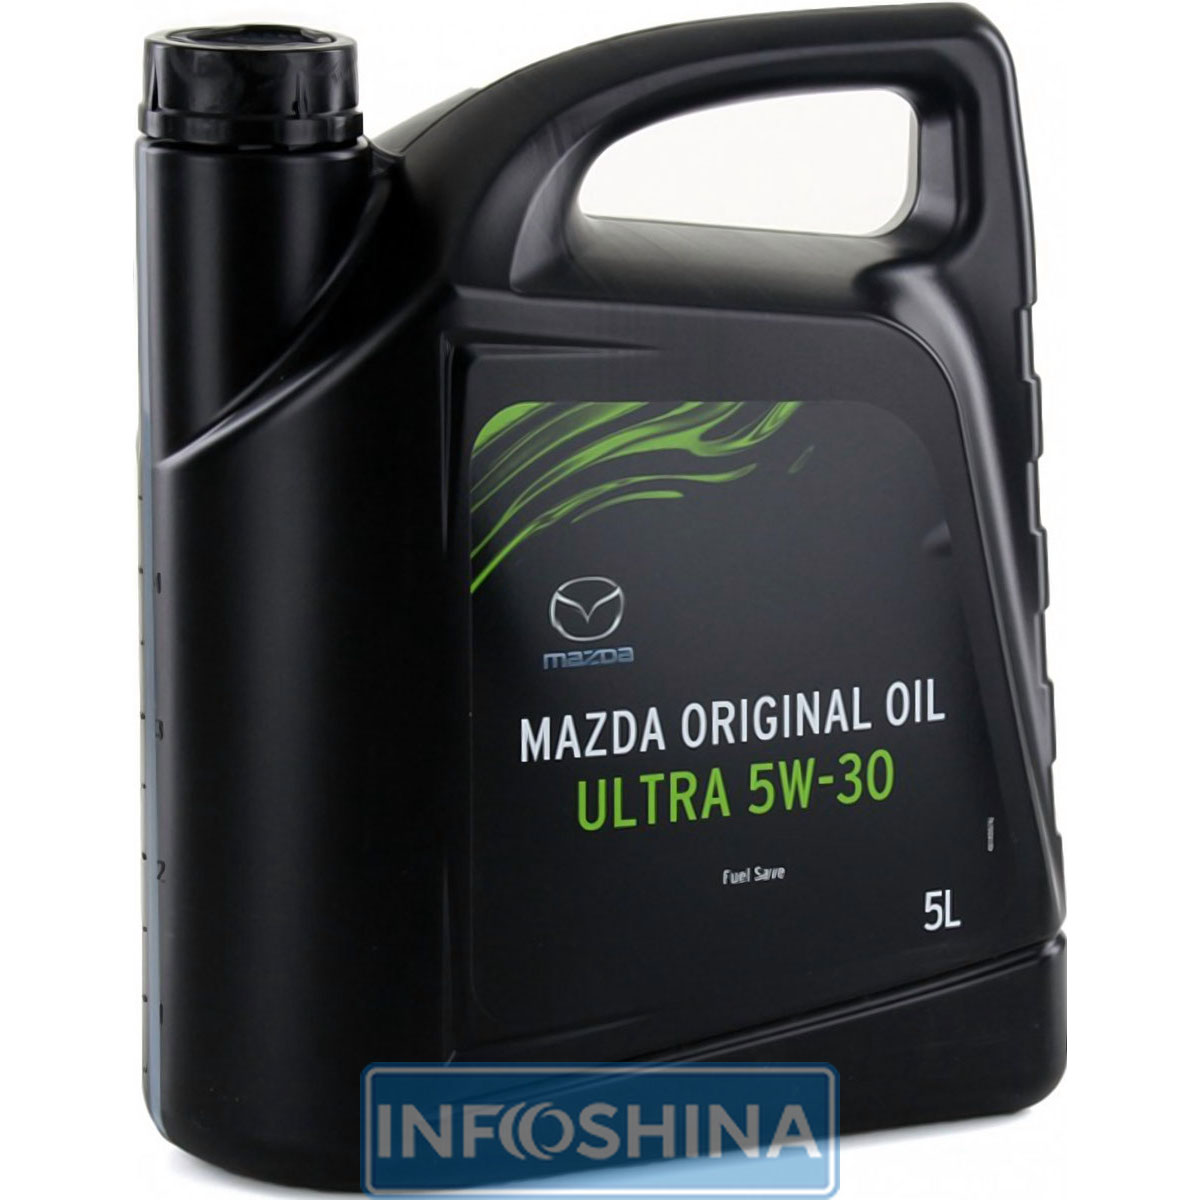 Mazda Original Oil Ultra 5W-30